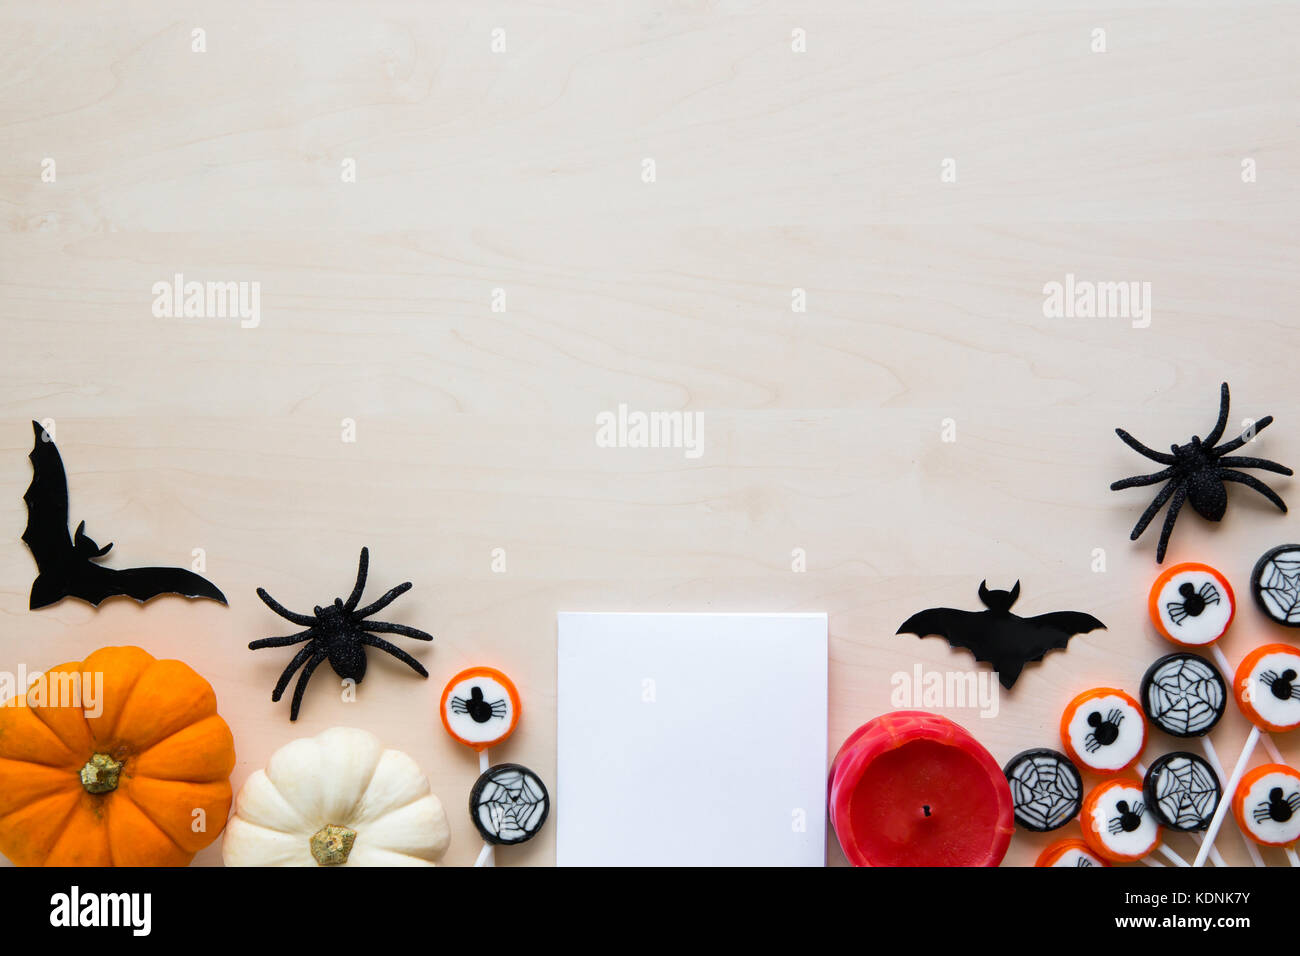 Fiesta de halloween fondo con arañas, murciélagos, dulces y calabazas en madera Foto de stock